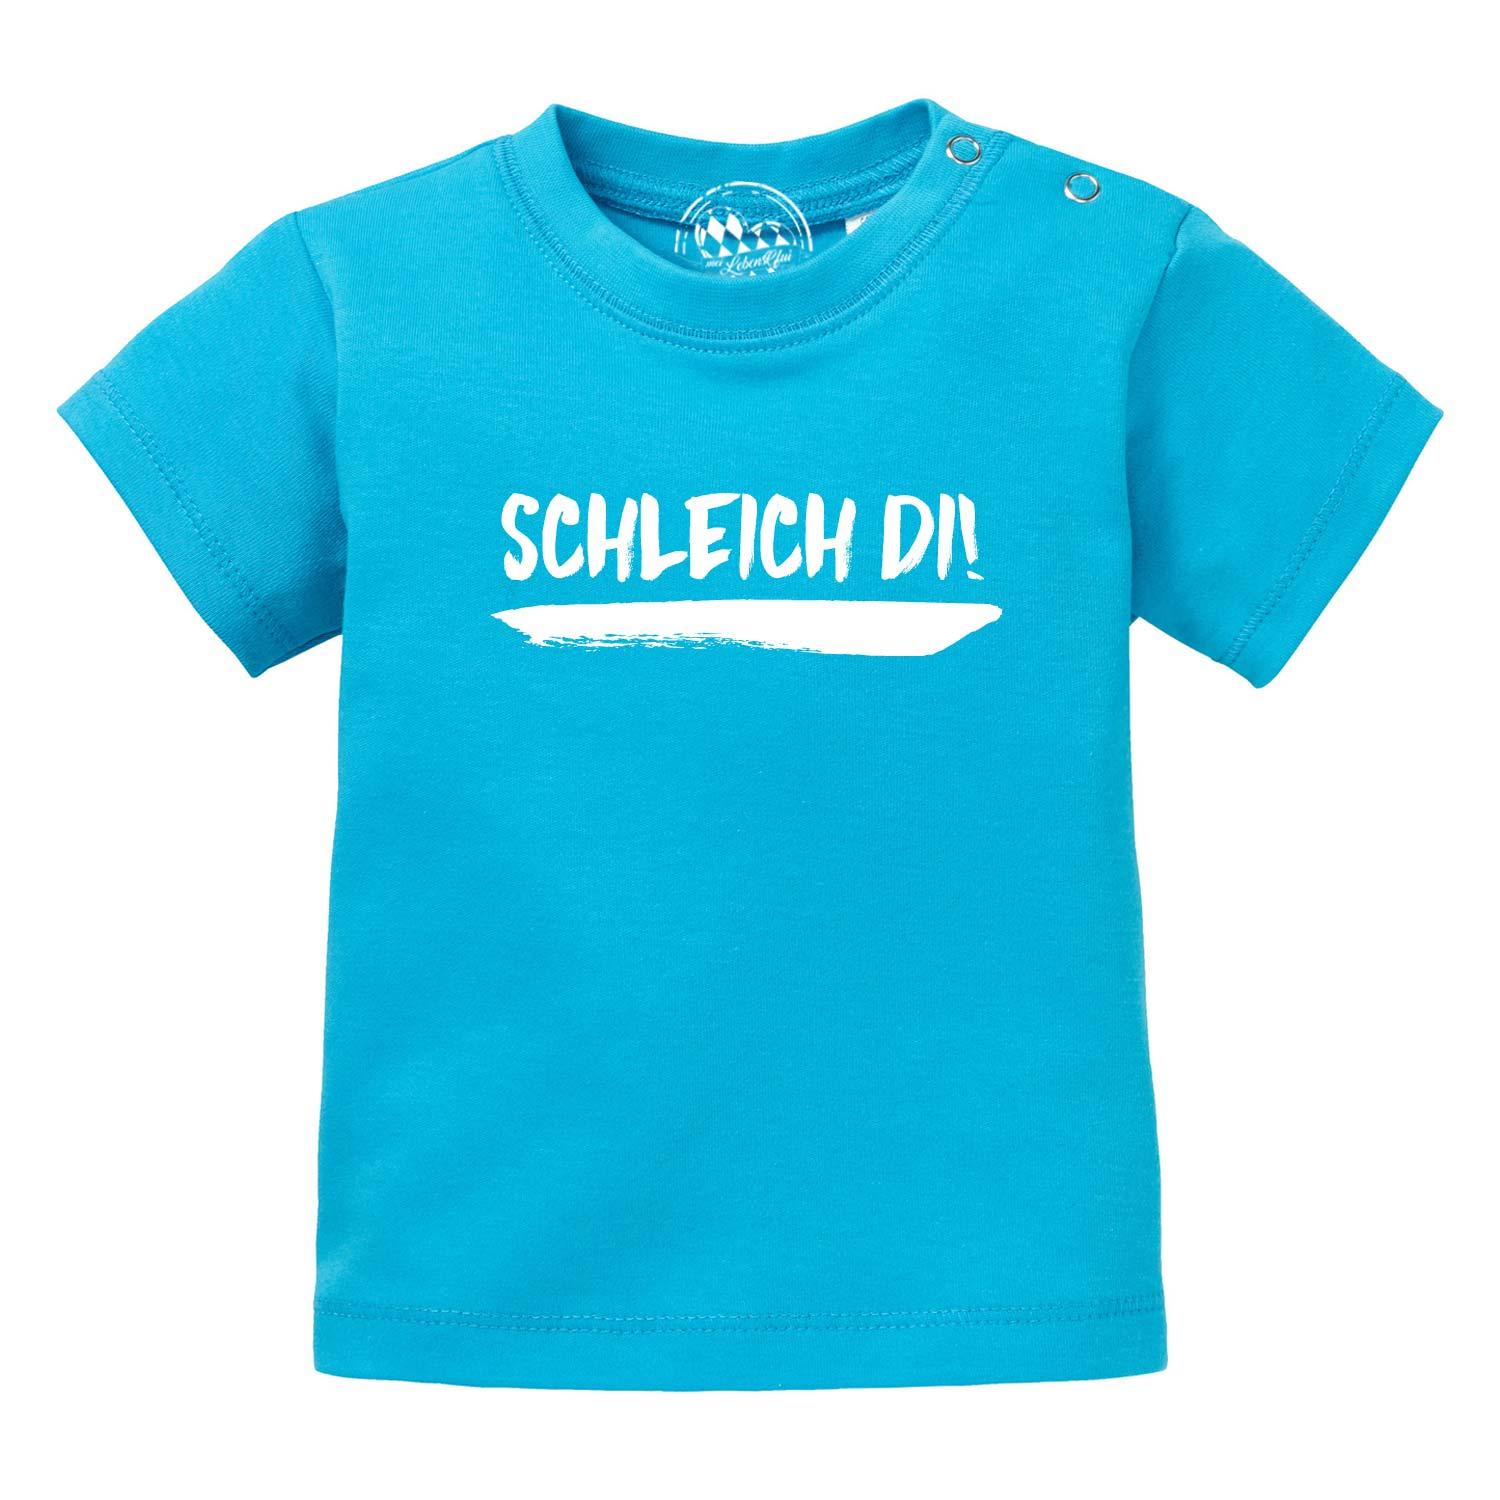 Baby T-Shirt "Schleich di!" - bavariashop - mei LebensGfui